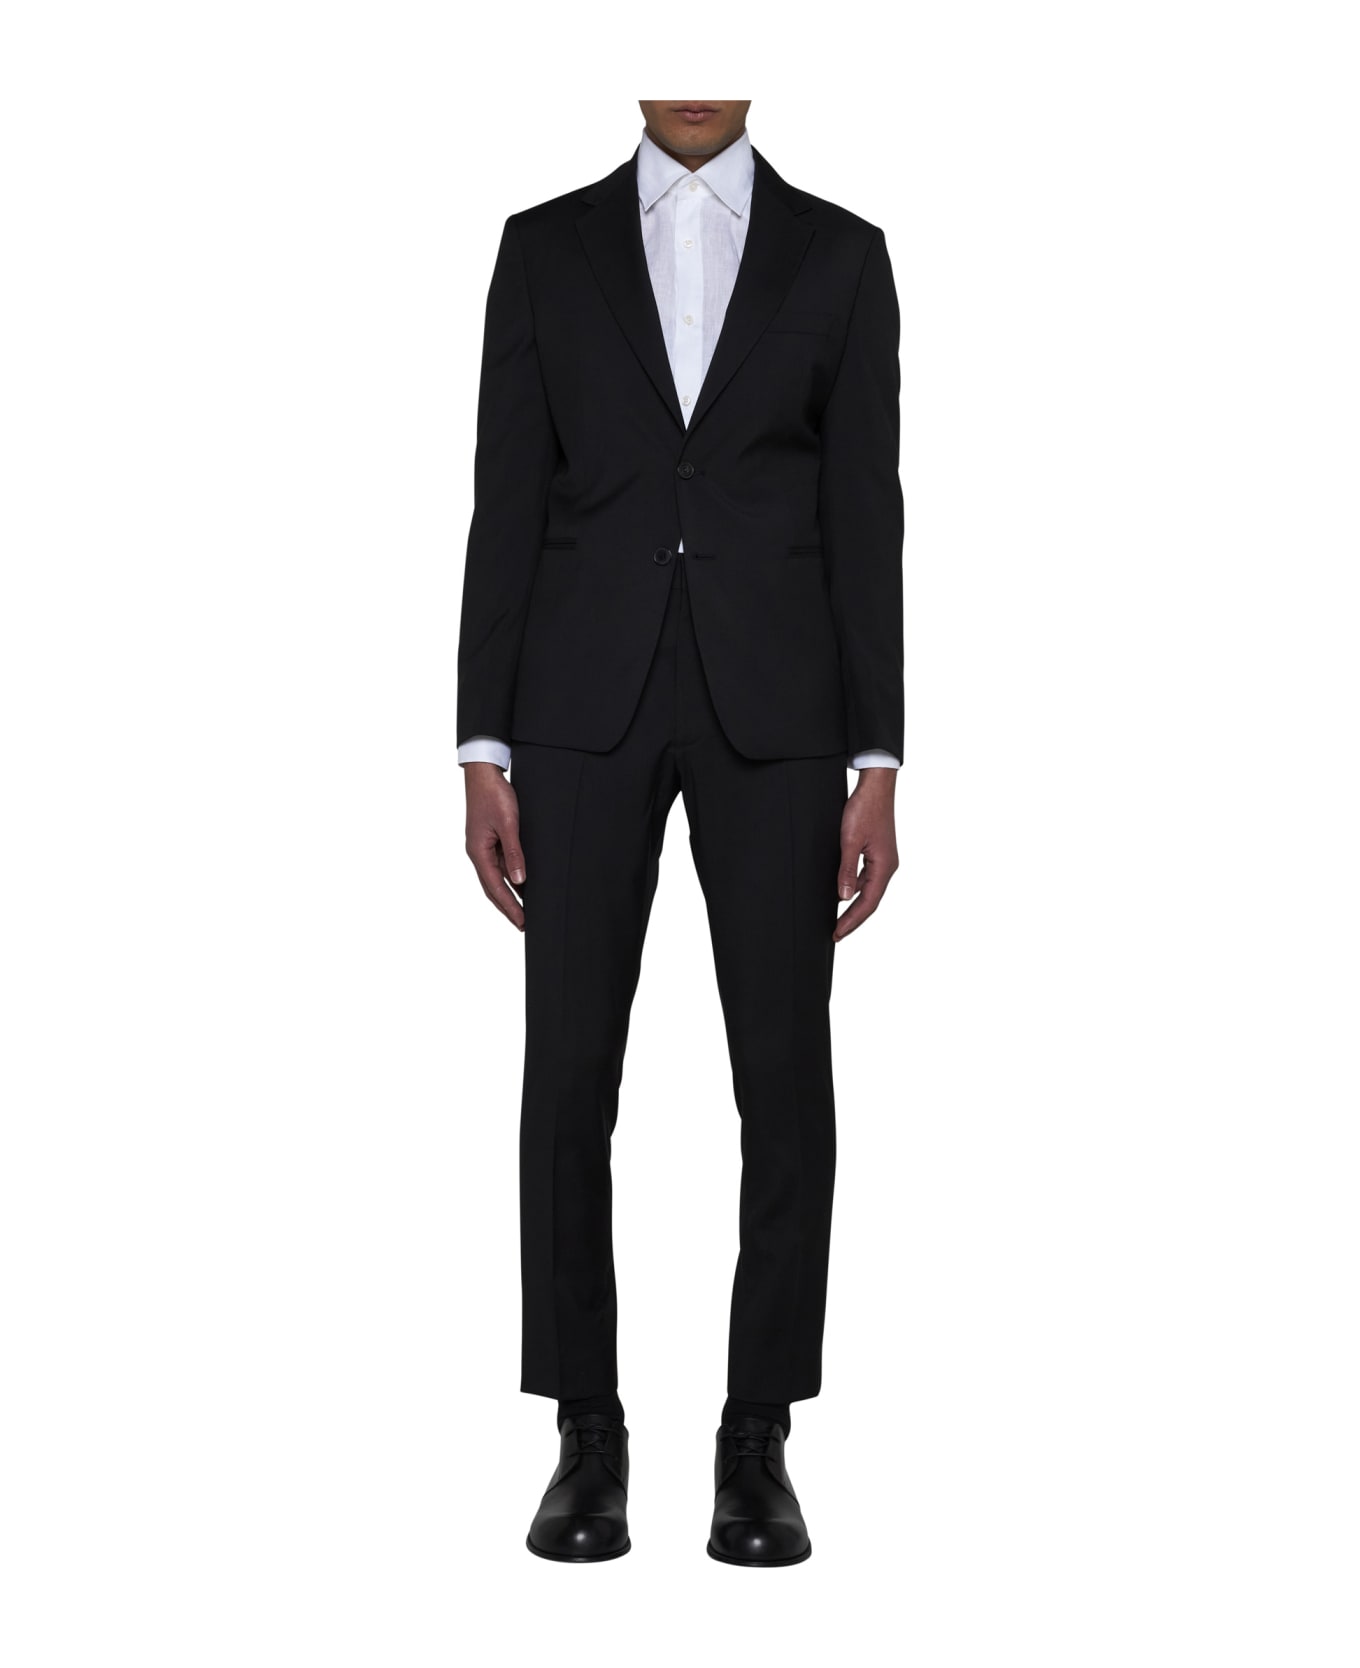 Low Brand Suit - Jet black スーツ